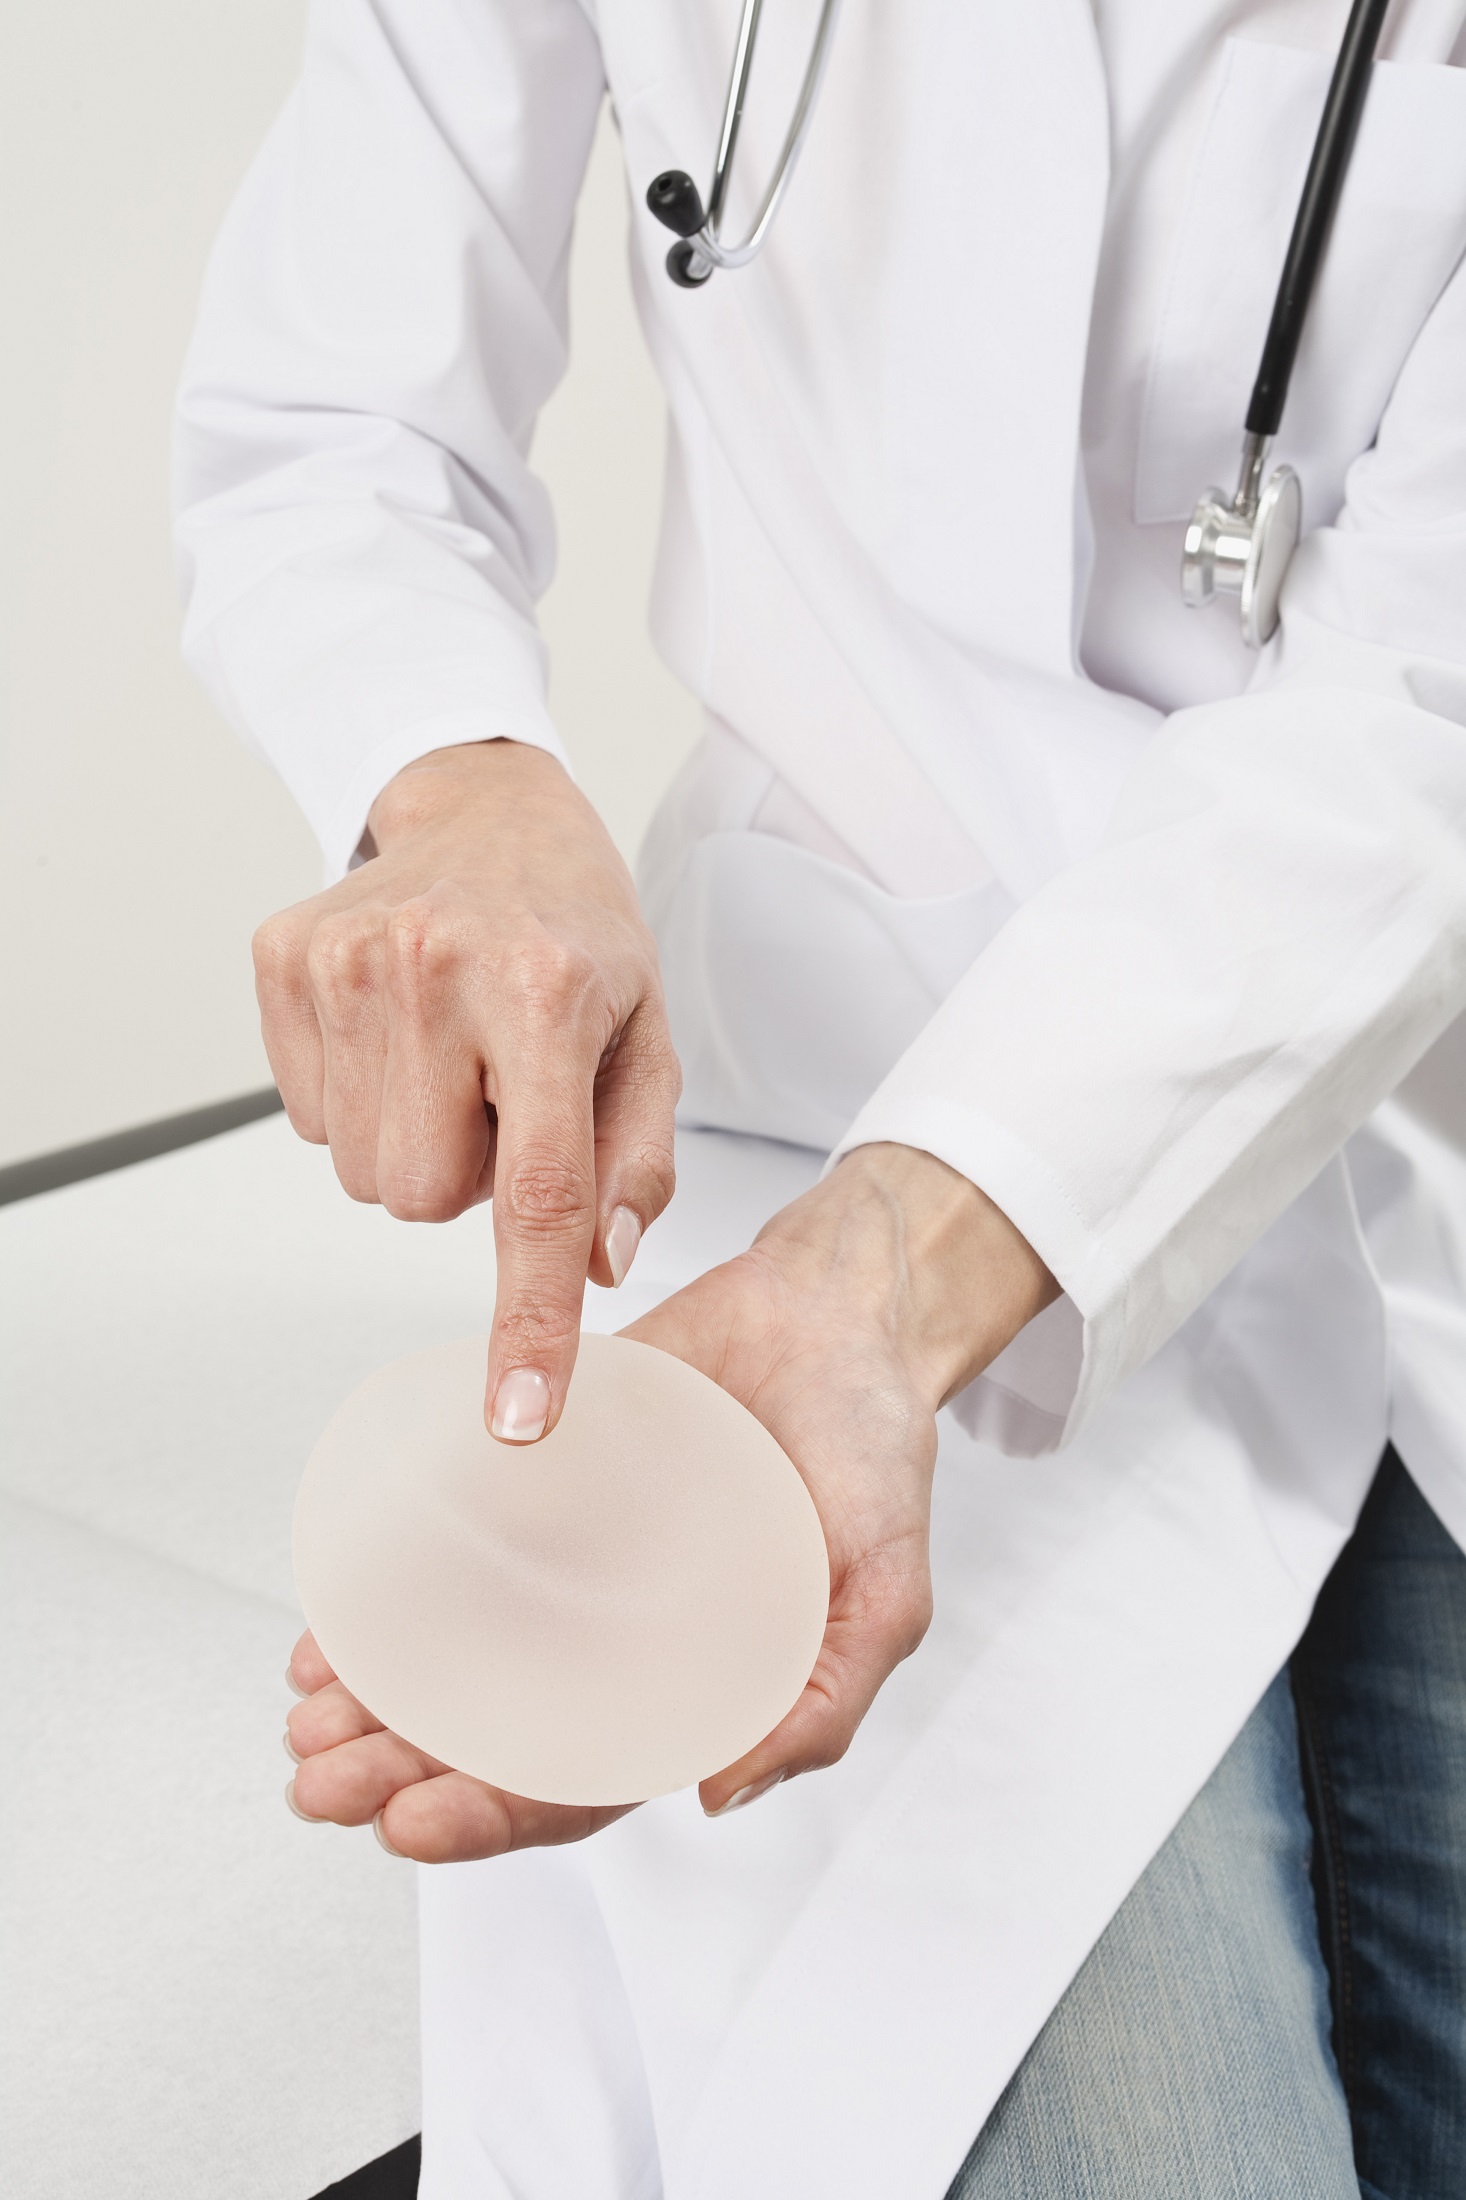 Brustimplantat auf der Hand des Arztes, die auf ihn zeigt. Bild zum thema: Brustimplantate – Für immer? 